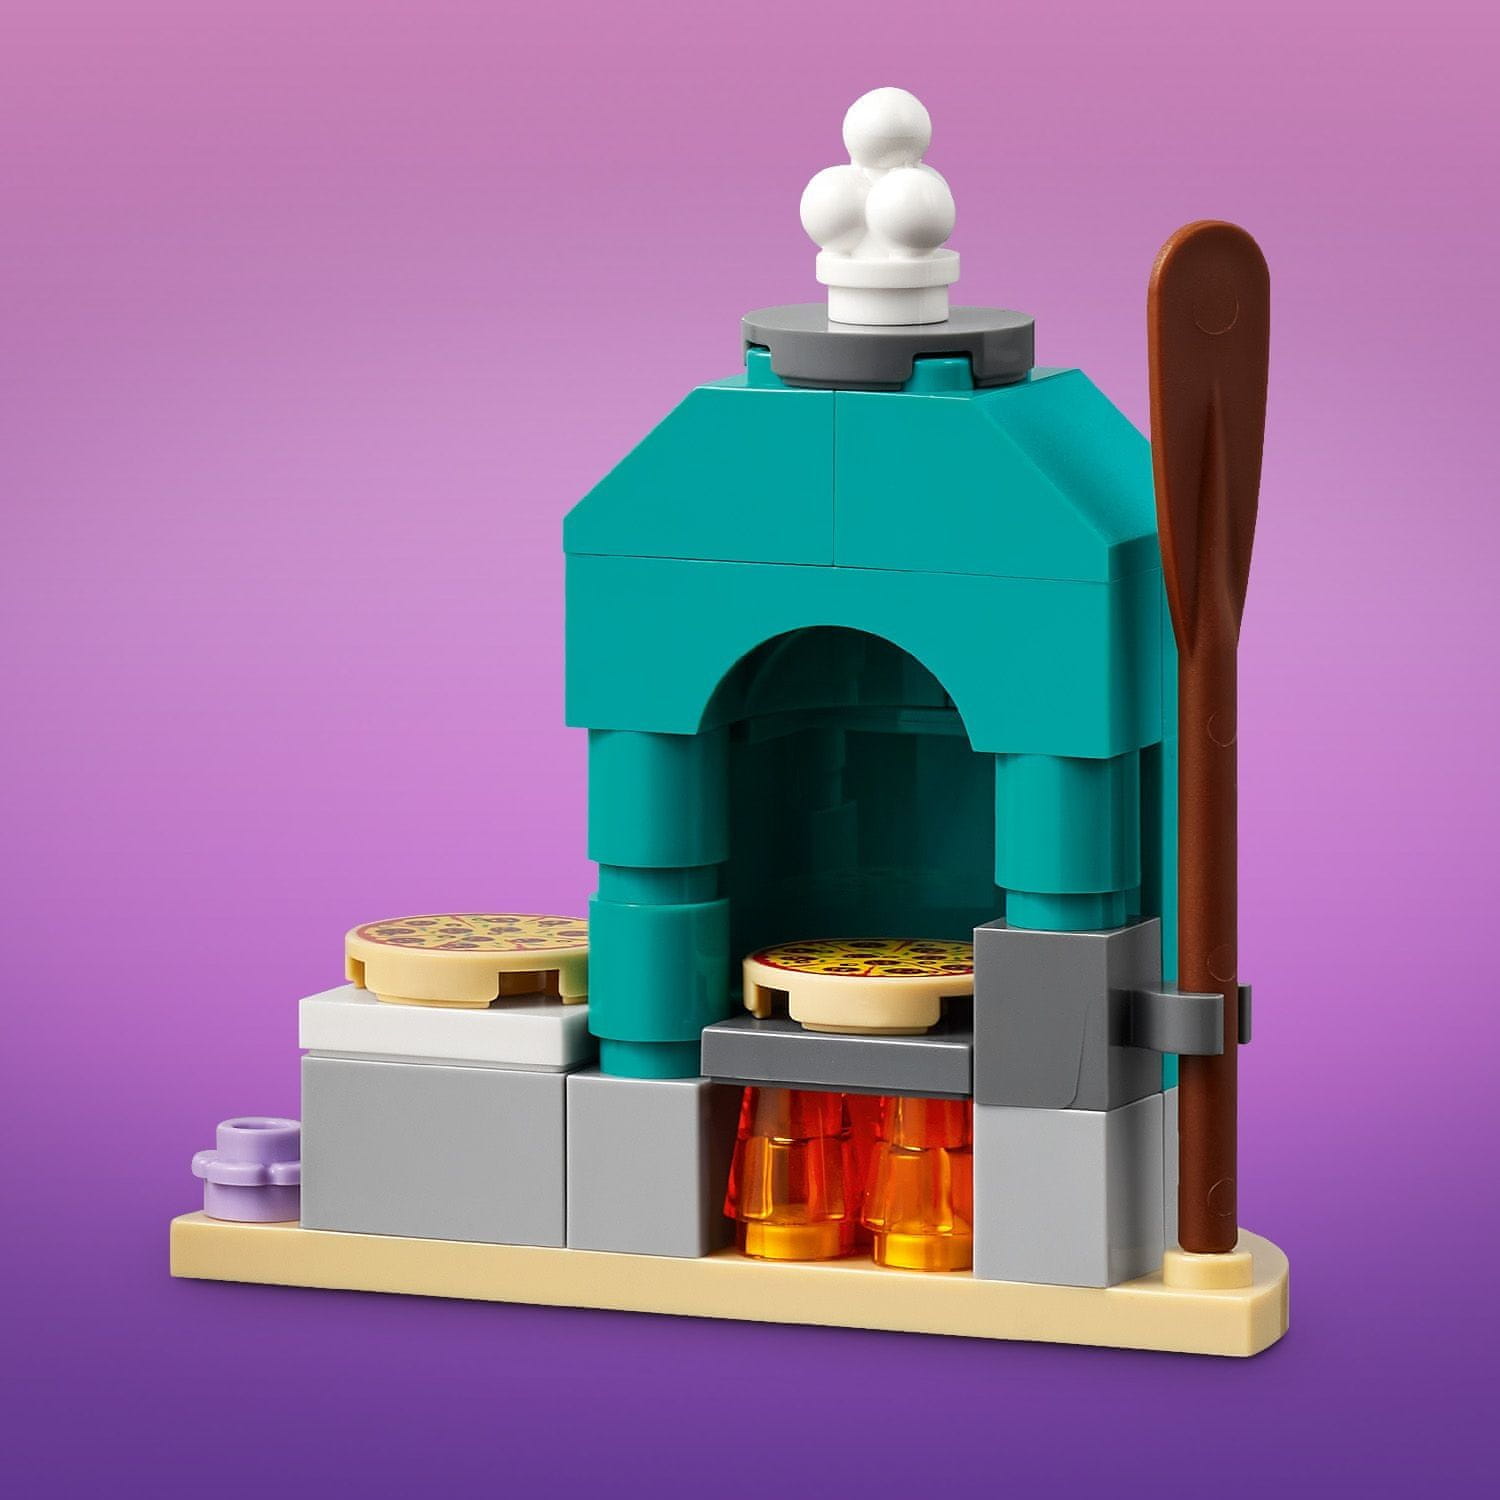 LEGO Friends 41705 Pizzerie v městečku Heartlake